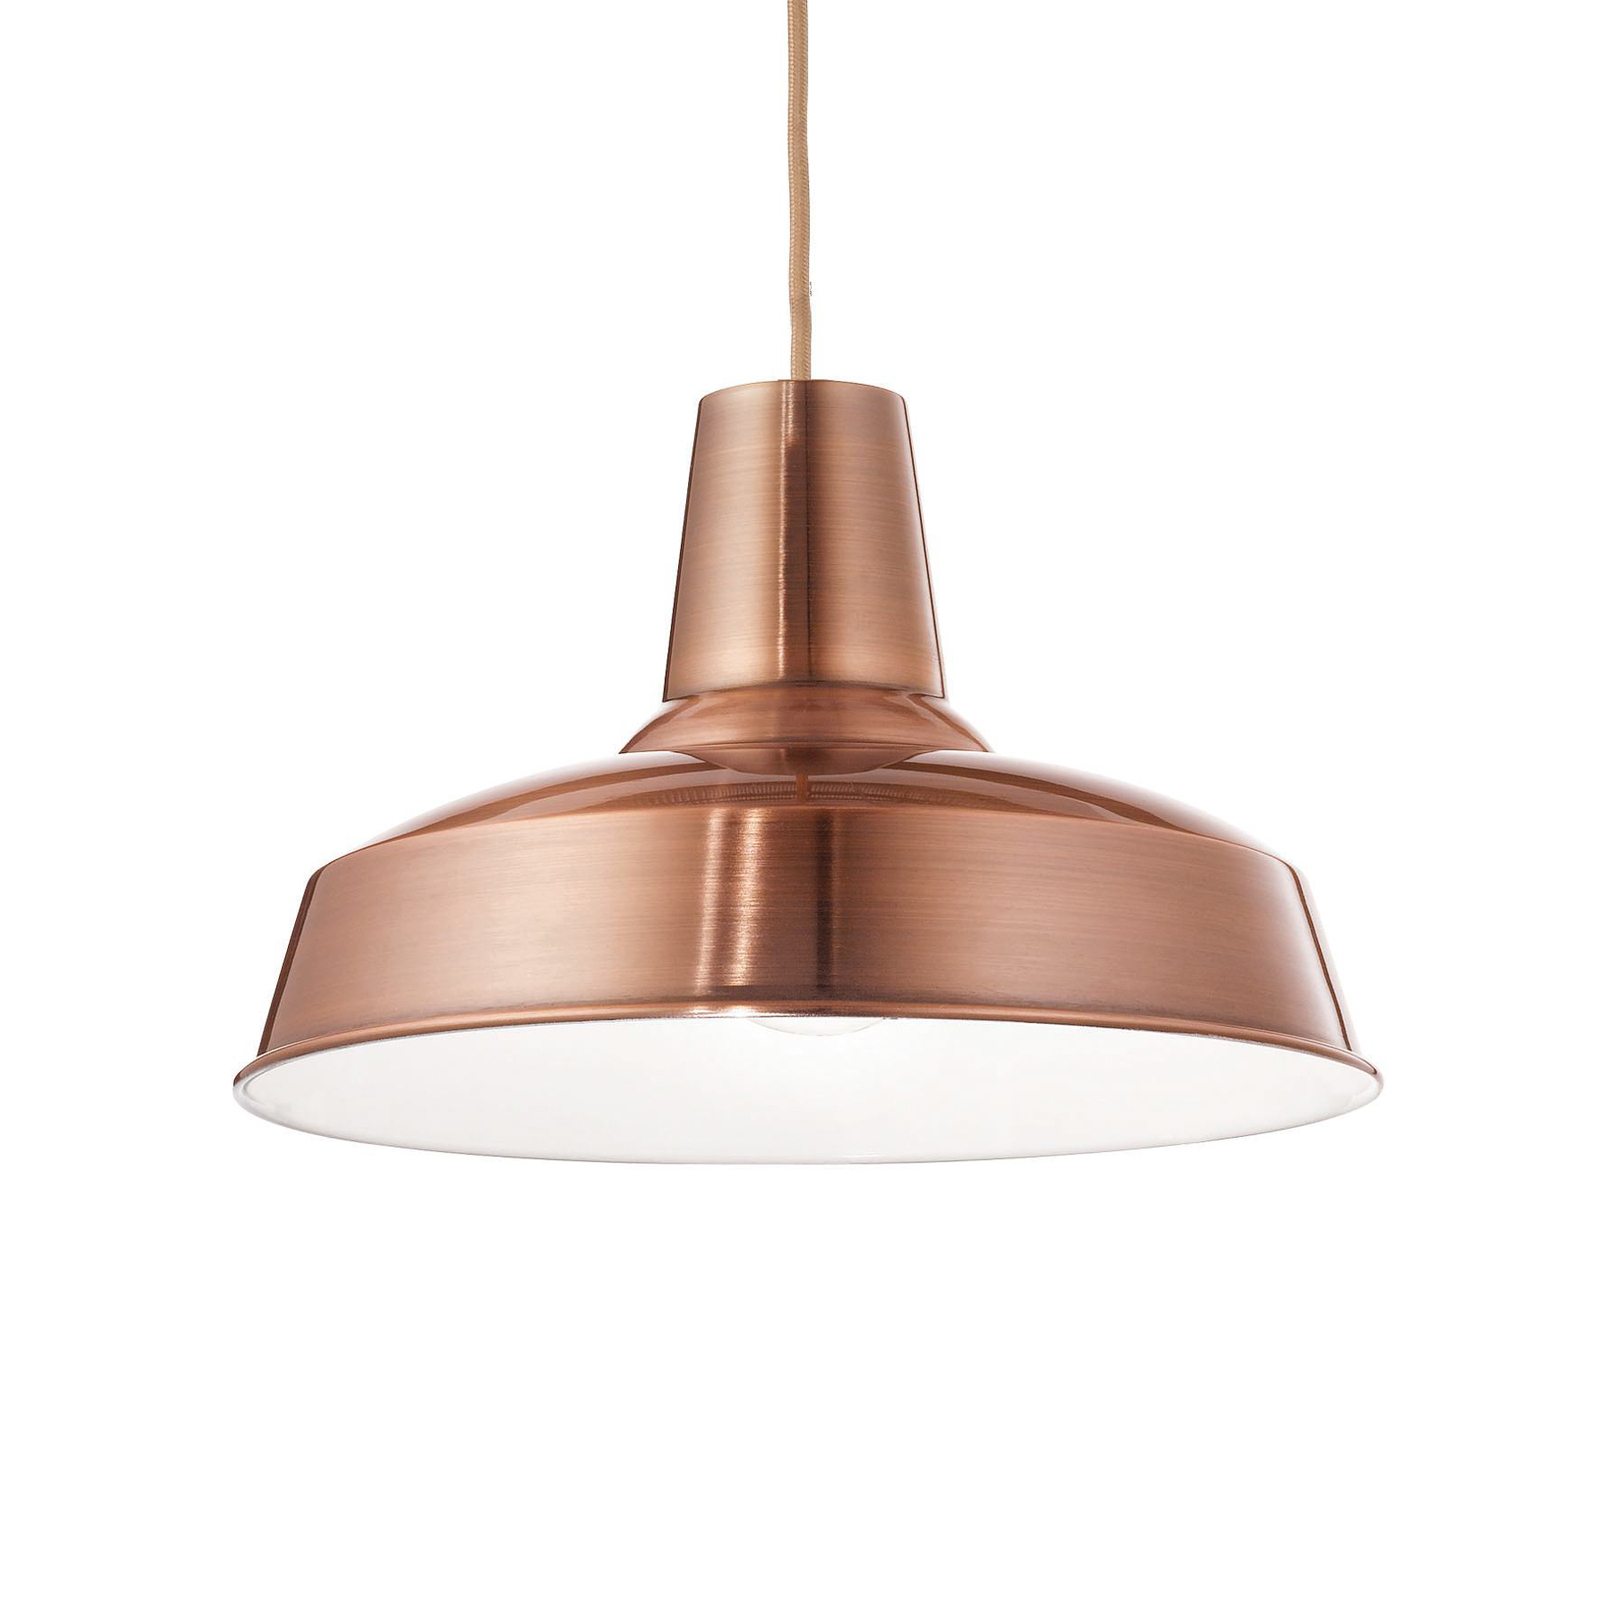 Viseća svjetiljka Ideal Lux Moby, bakrena boja, metal, Ø 35 cm